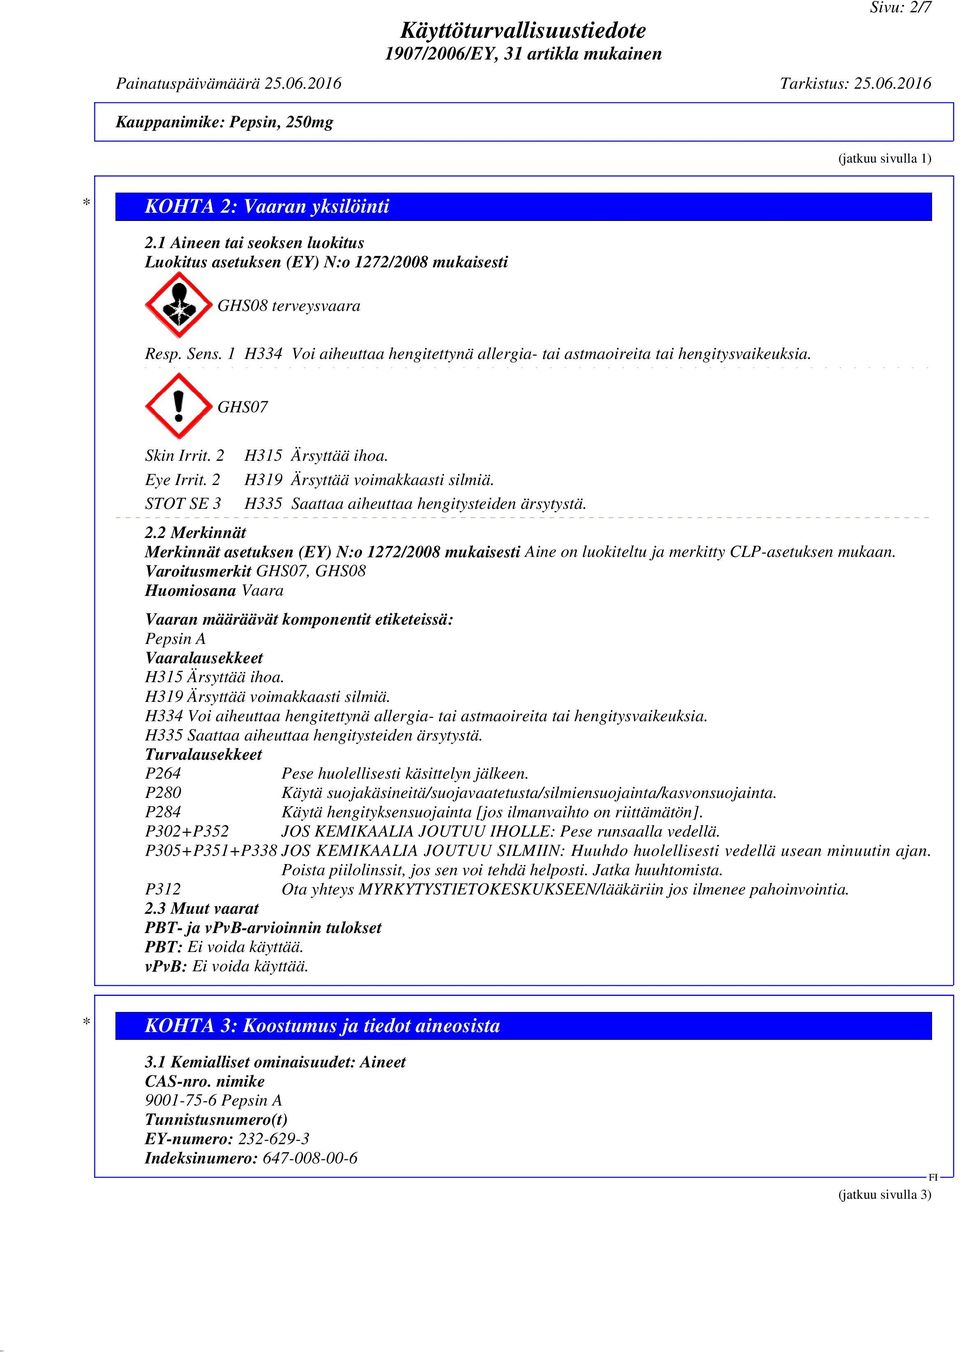 STOT SE 3 H335 Saattaa aiheuttaa hengitysteiden ärsytystä. 2.2 Merkinnät Merkinnät asetuksen (EY) N:o 1272/2008 mukaisesti Aine on luokiteltu ja merkitty CLP-asetuksen mukaan.